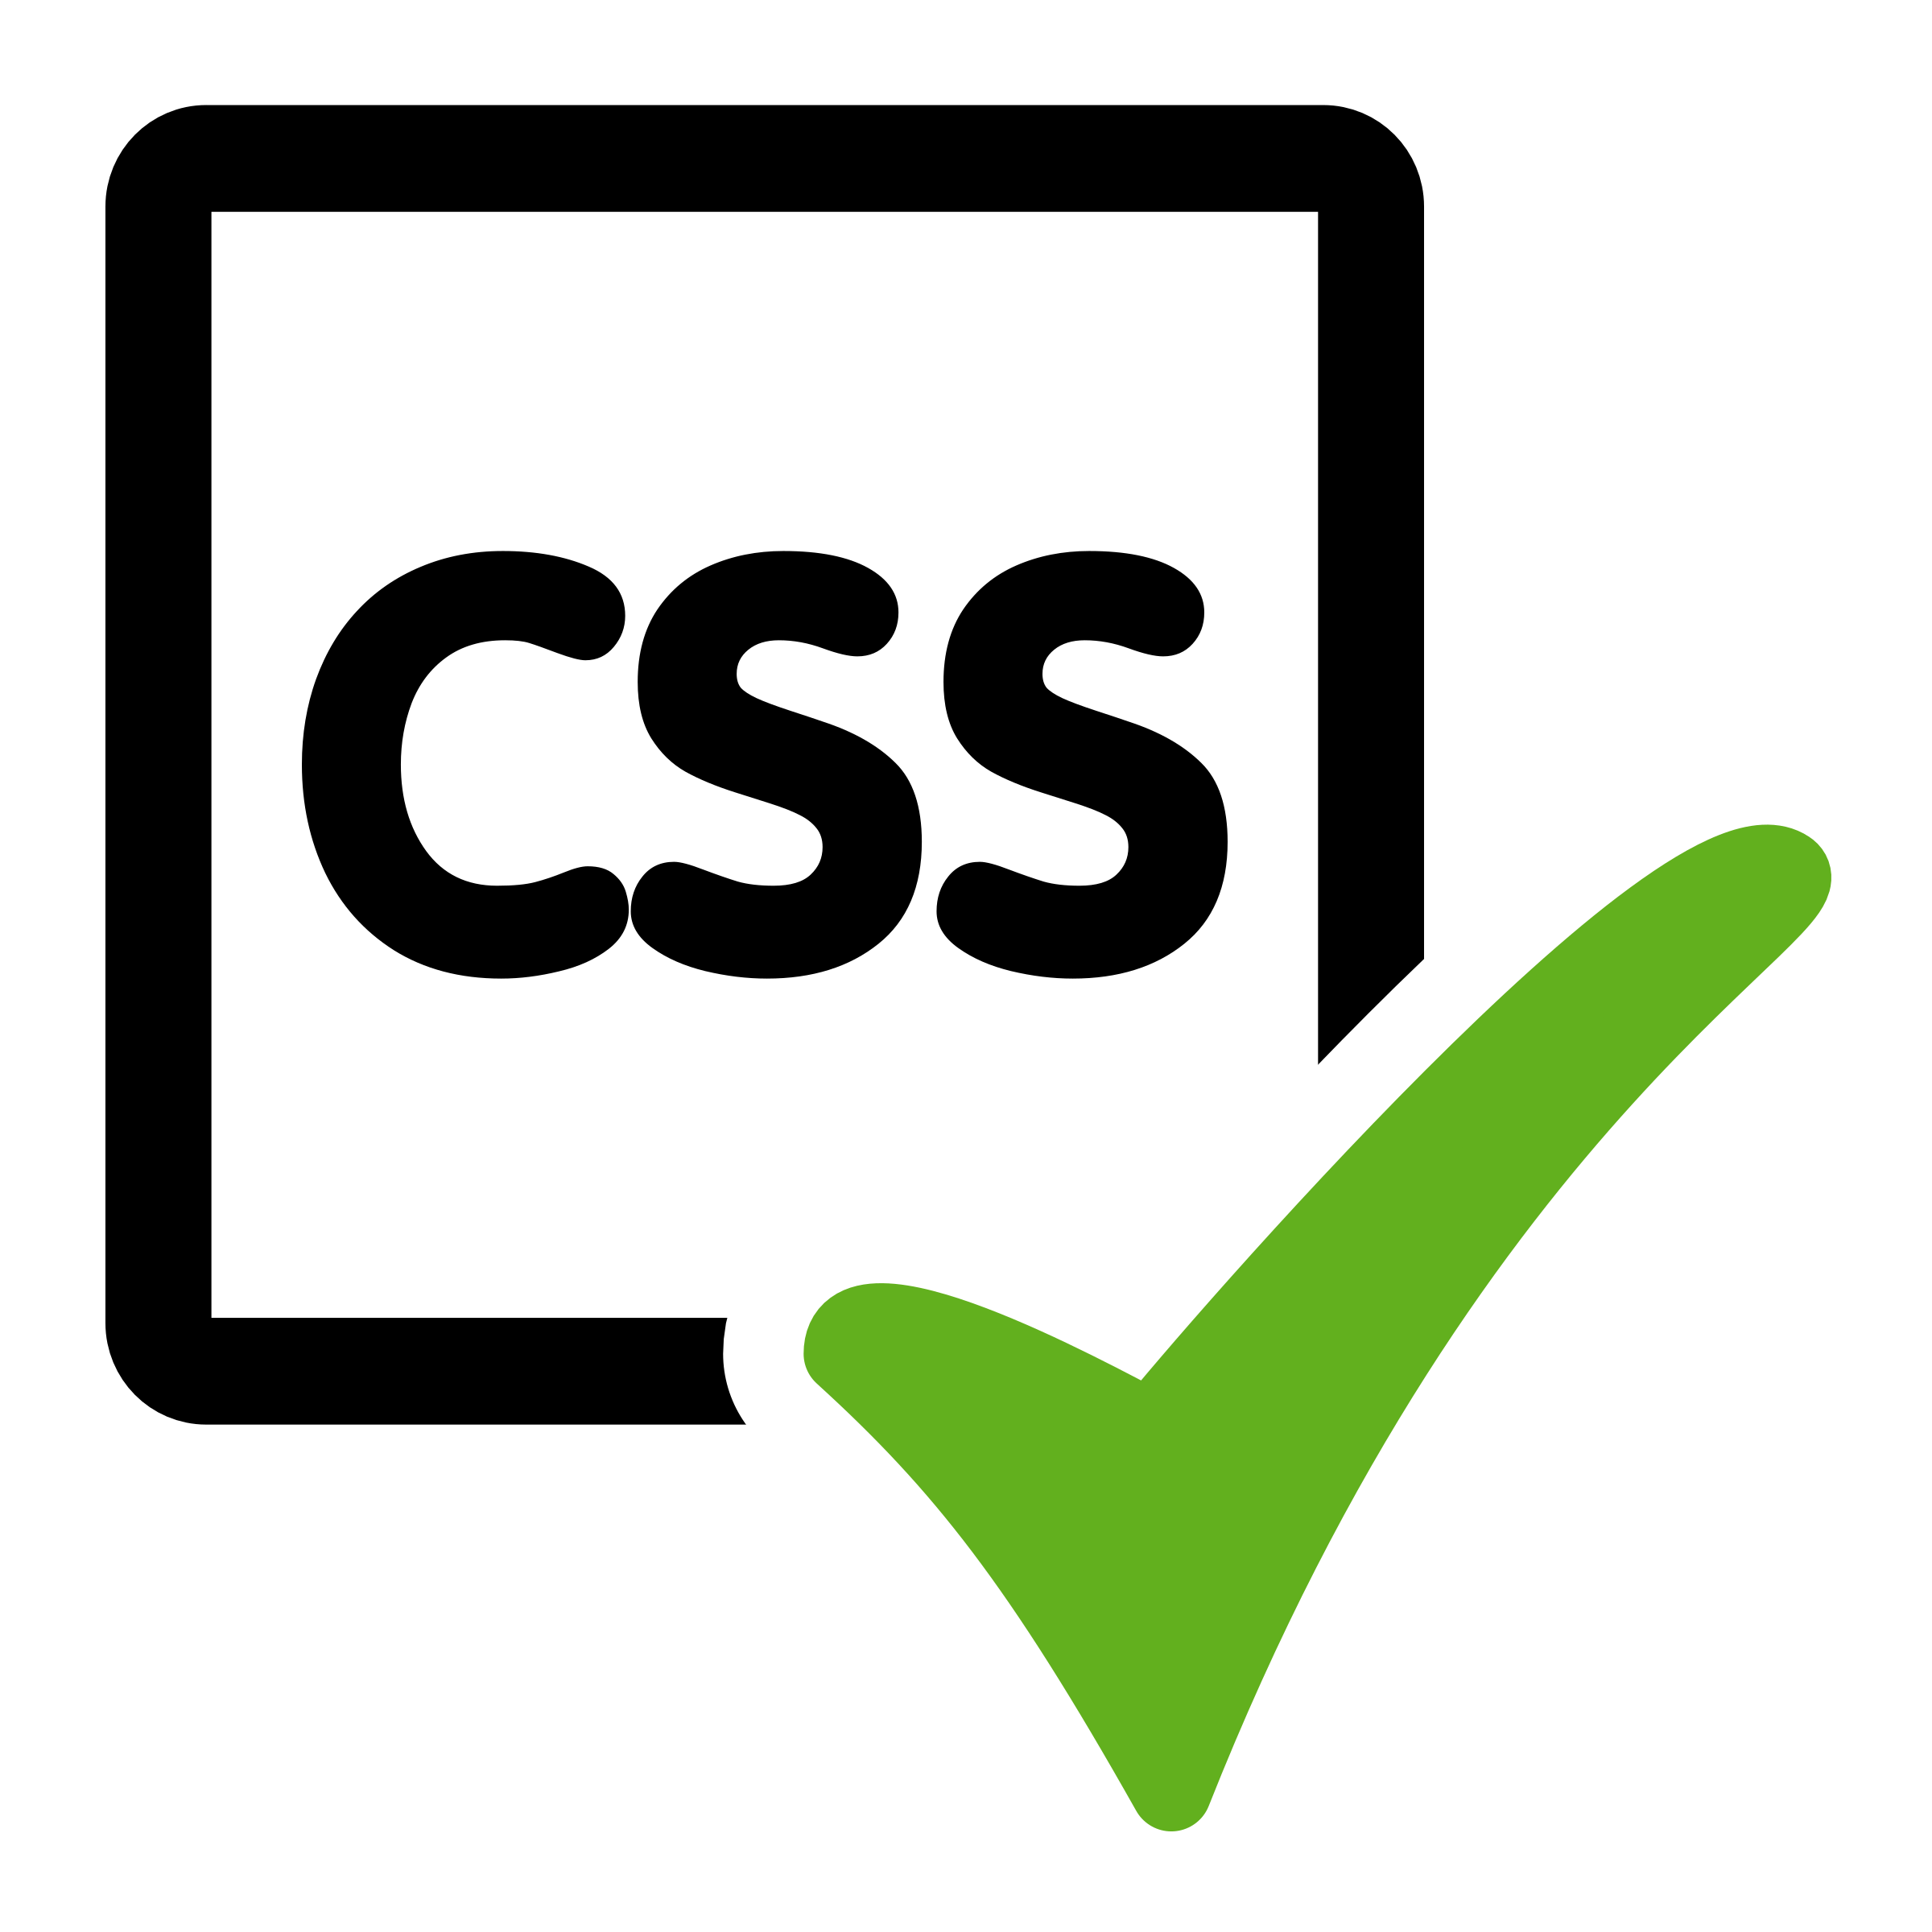 C image source. CSS логотип. Иконка CSS. Значок CSS PNG. CSS икон.